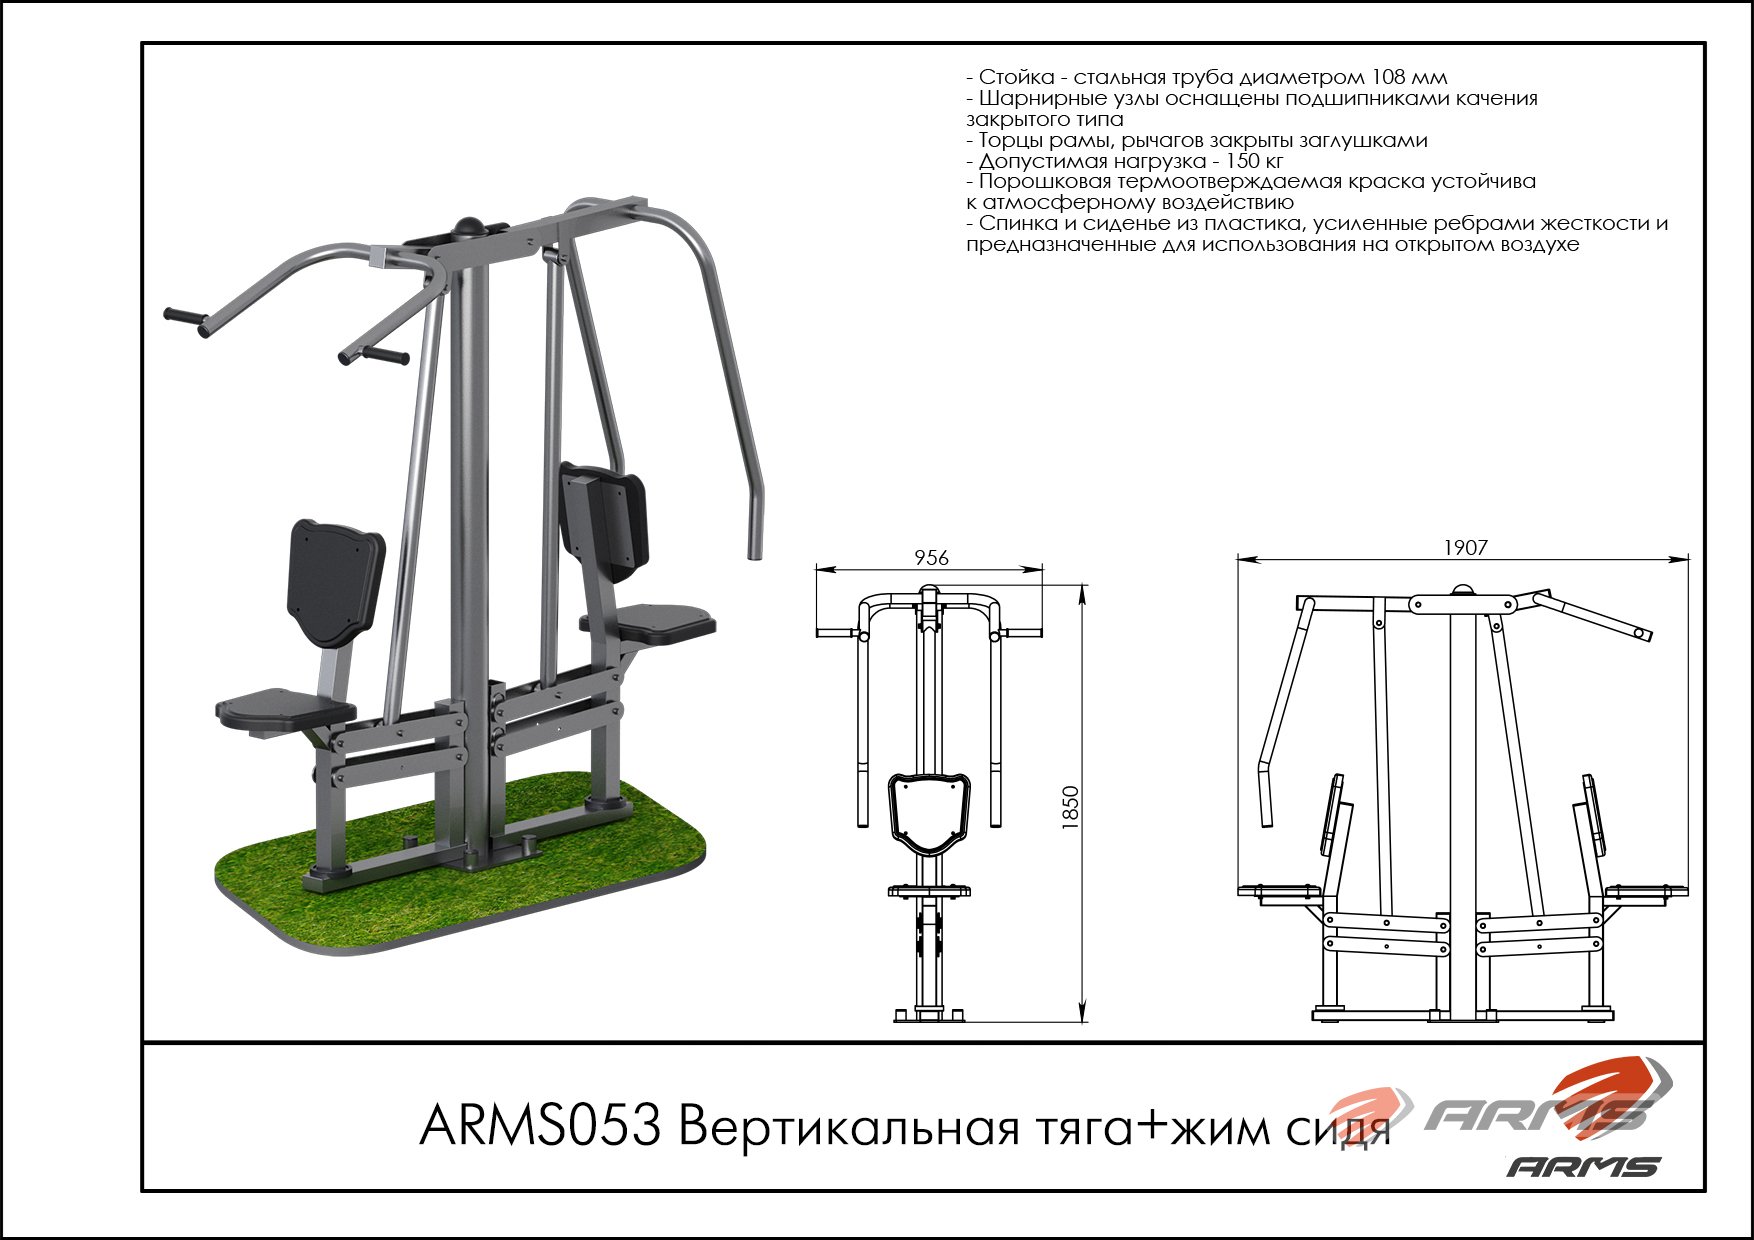 Вертикальная тяга + жим сидя ARMS053 купить в Москве по доступной цене с доставкой - официальный сайт производителя Arms